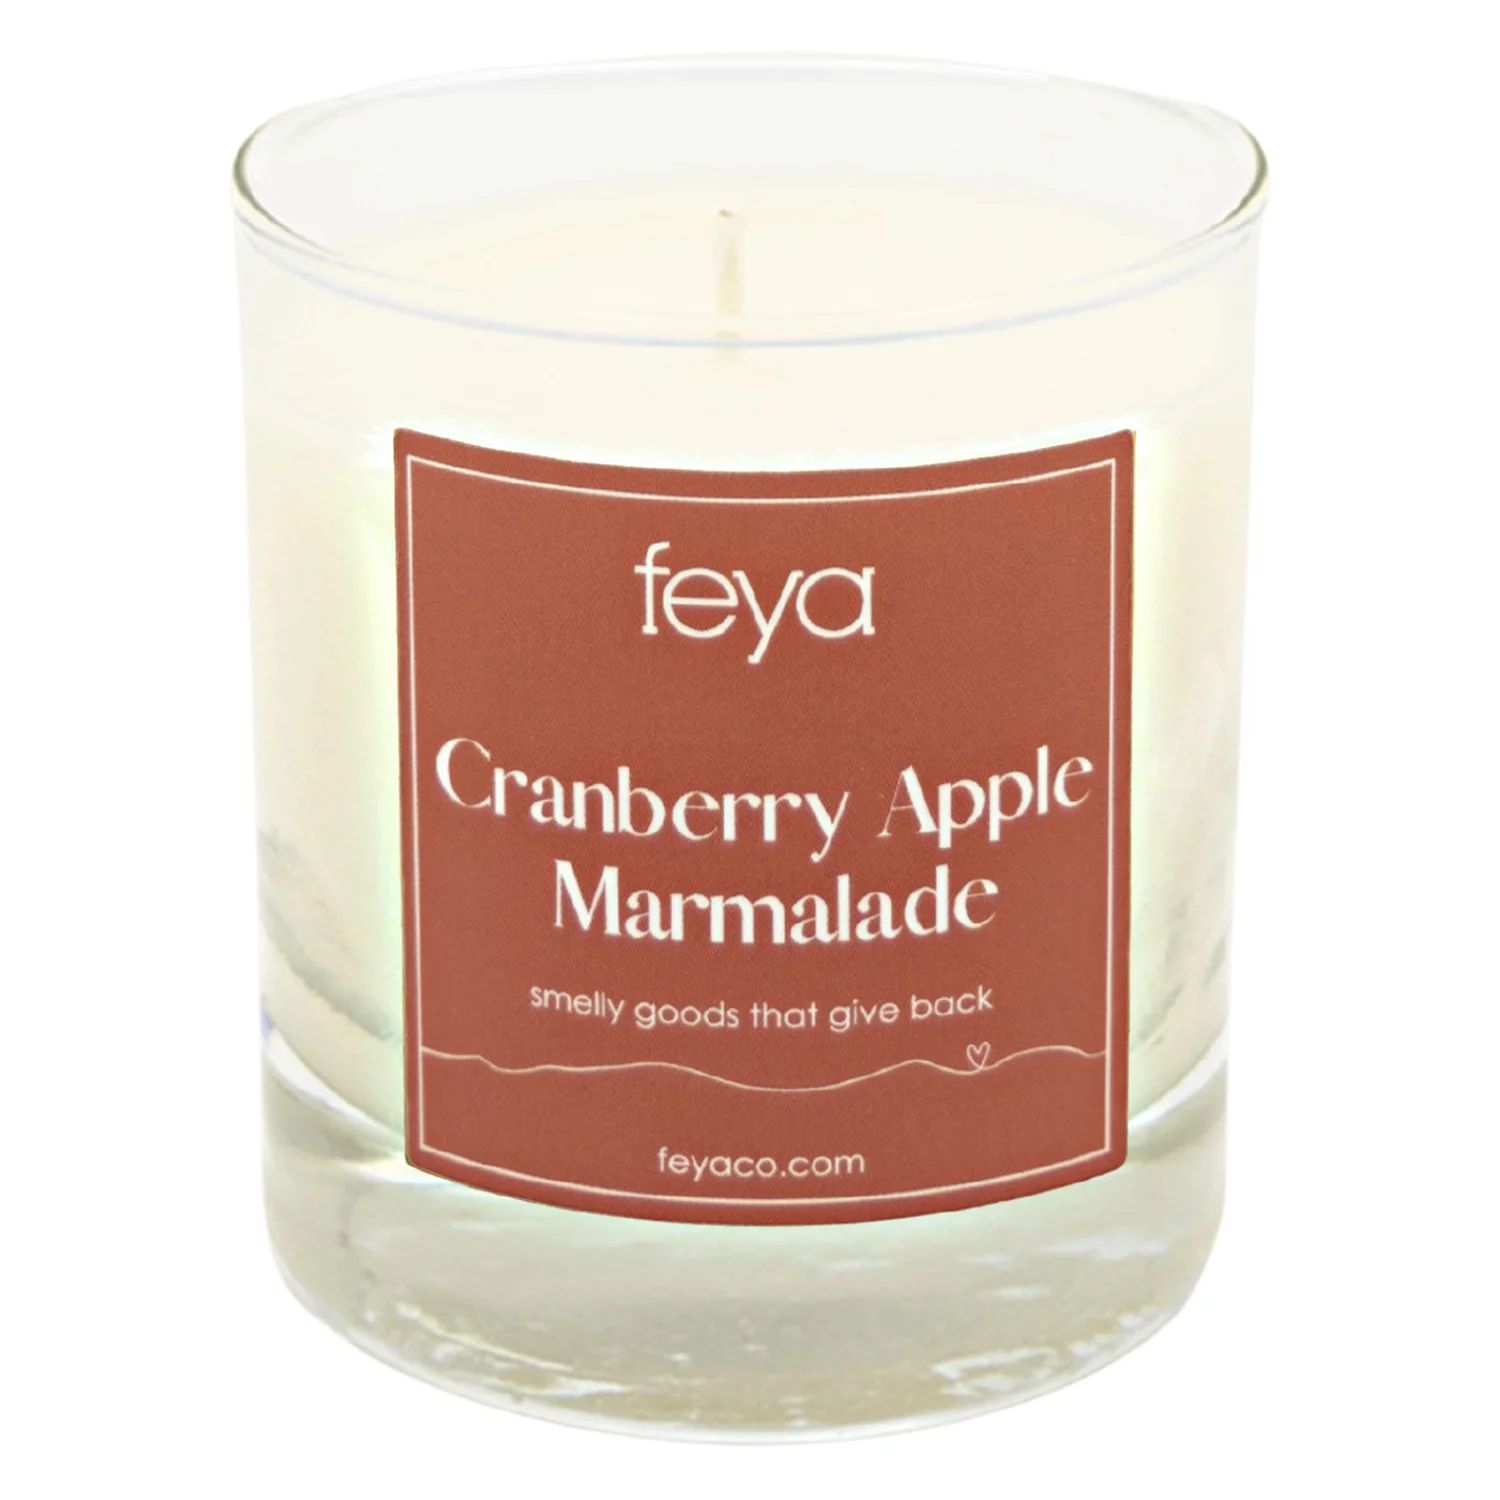 Feya Candle Клюквенно-яблочный мармелад, 6,5 унций. Соевая свеча feya candle клюквенно яблочный мармелад 6 5 унций соевая свеча